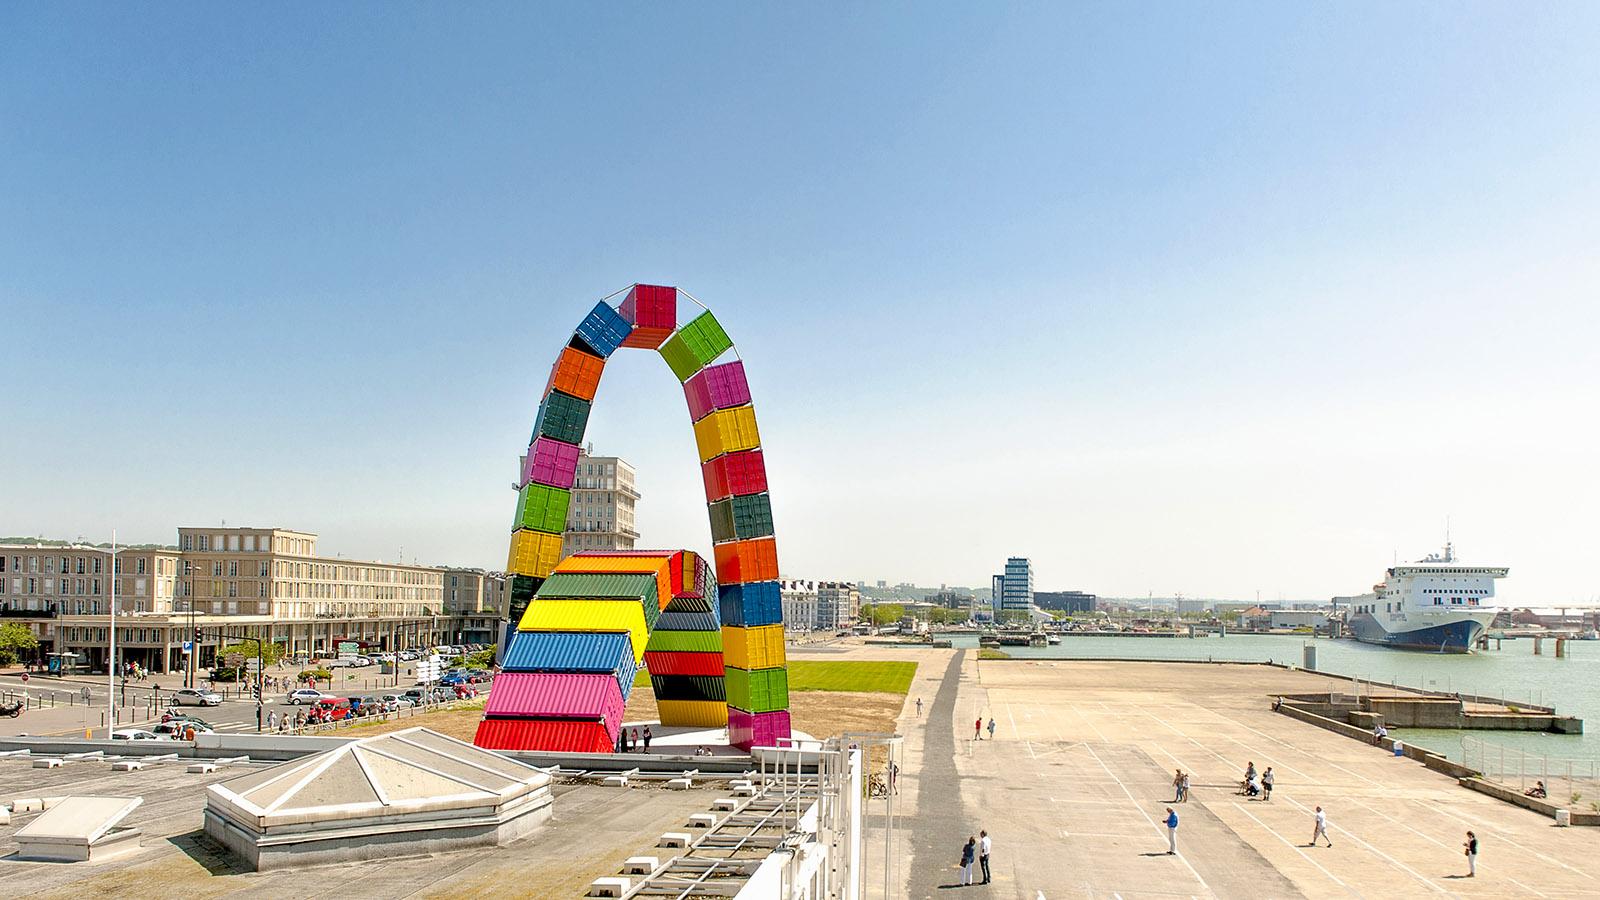 Vincent Ganivet schuf für Le Havre eine "Catene de Containers", ein Bogen aus Containern. Foto: Hilke Maunder